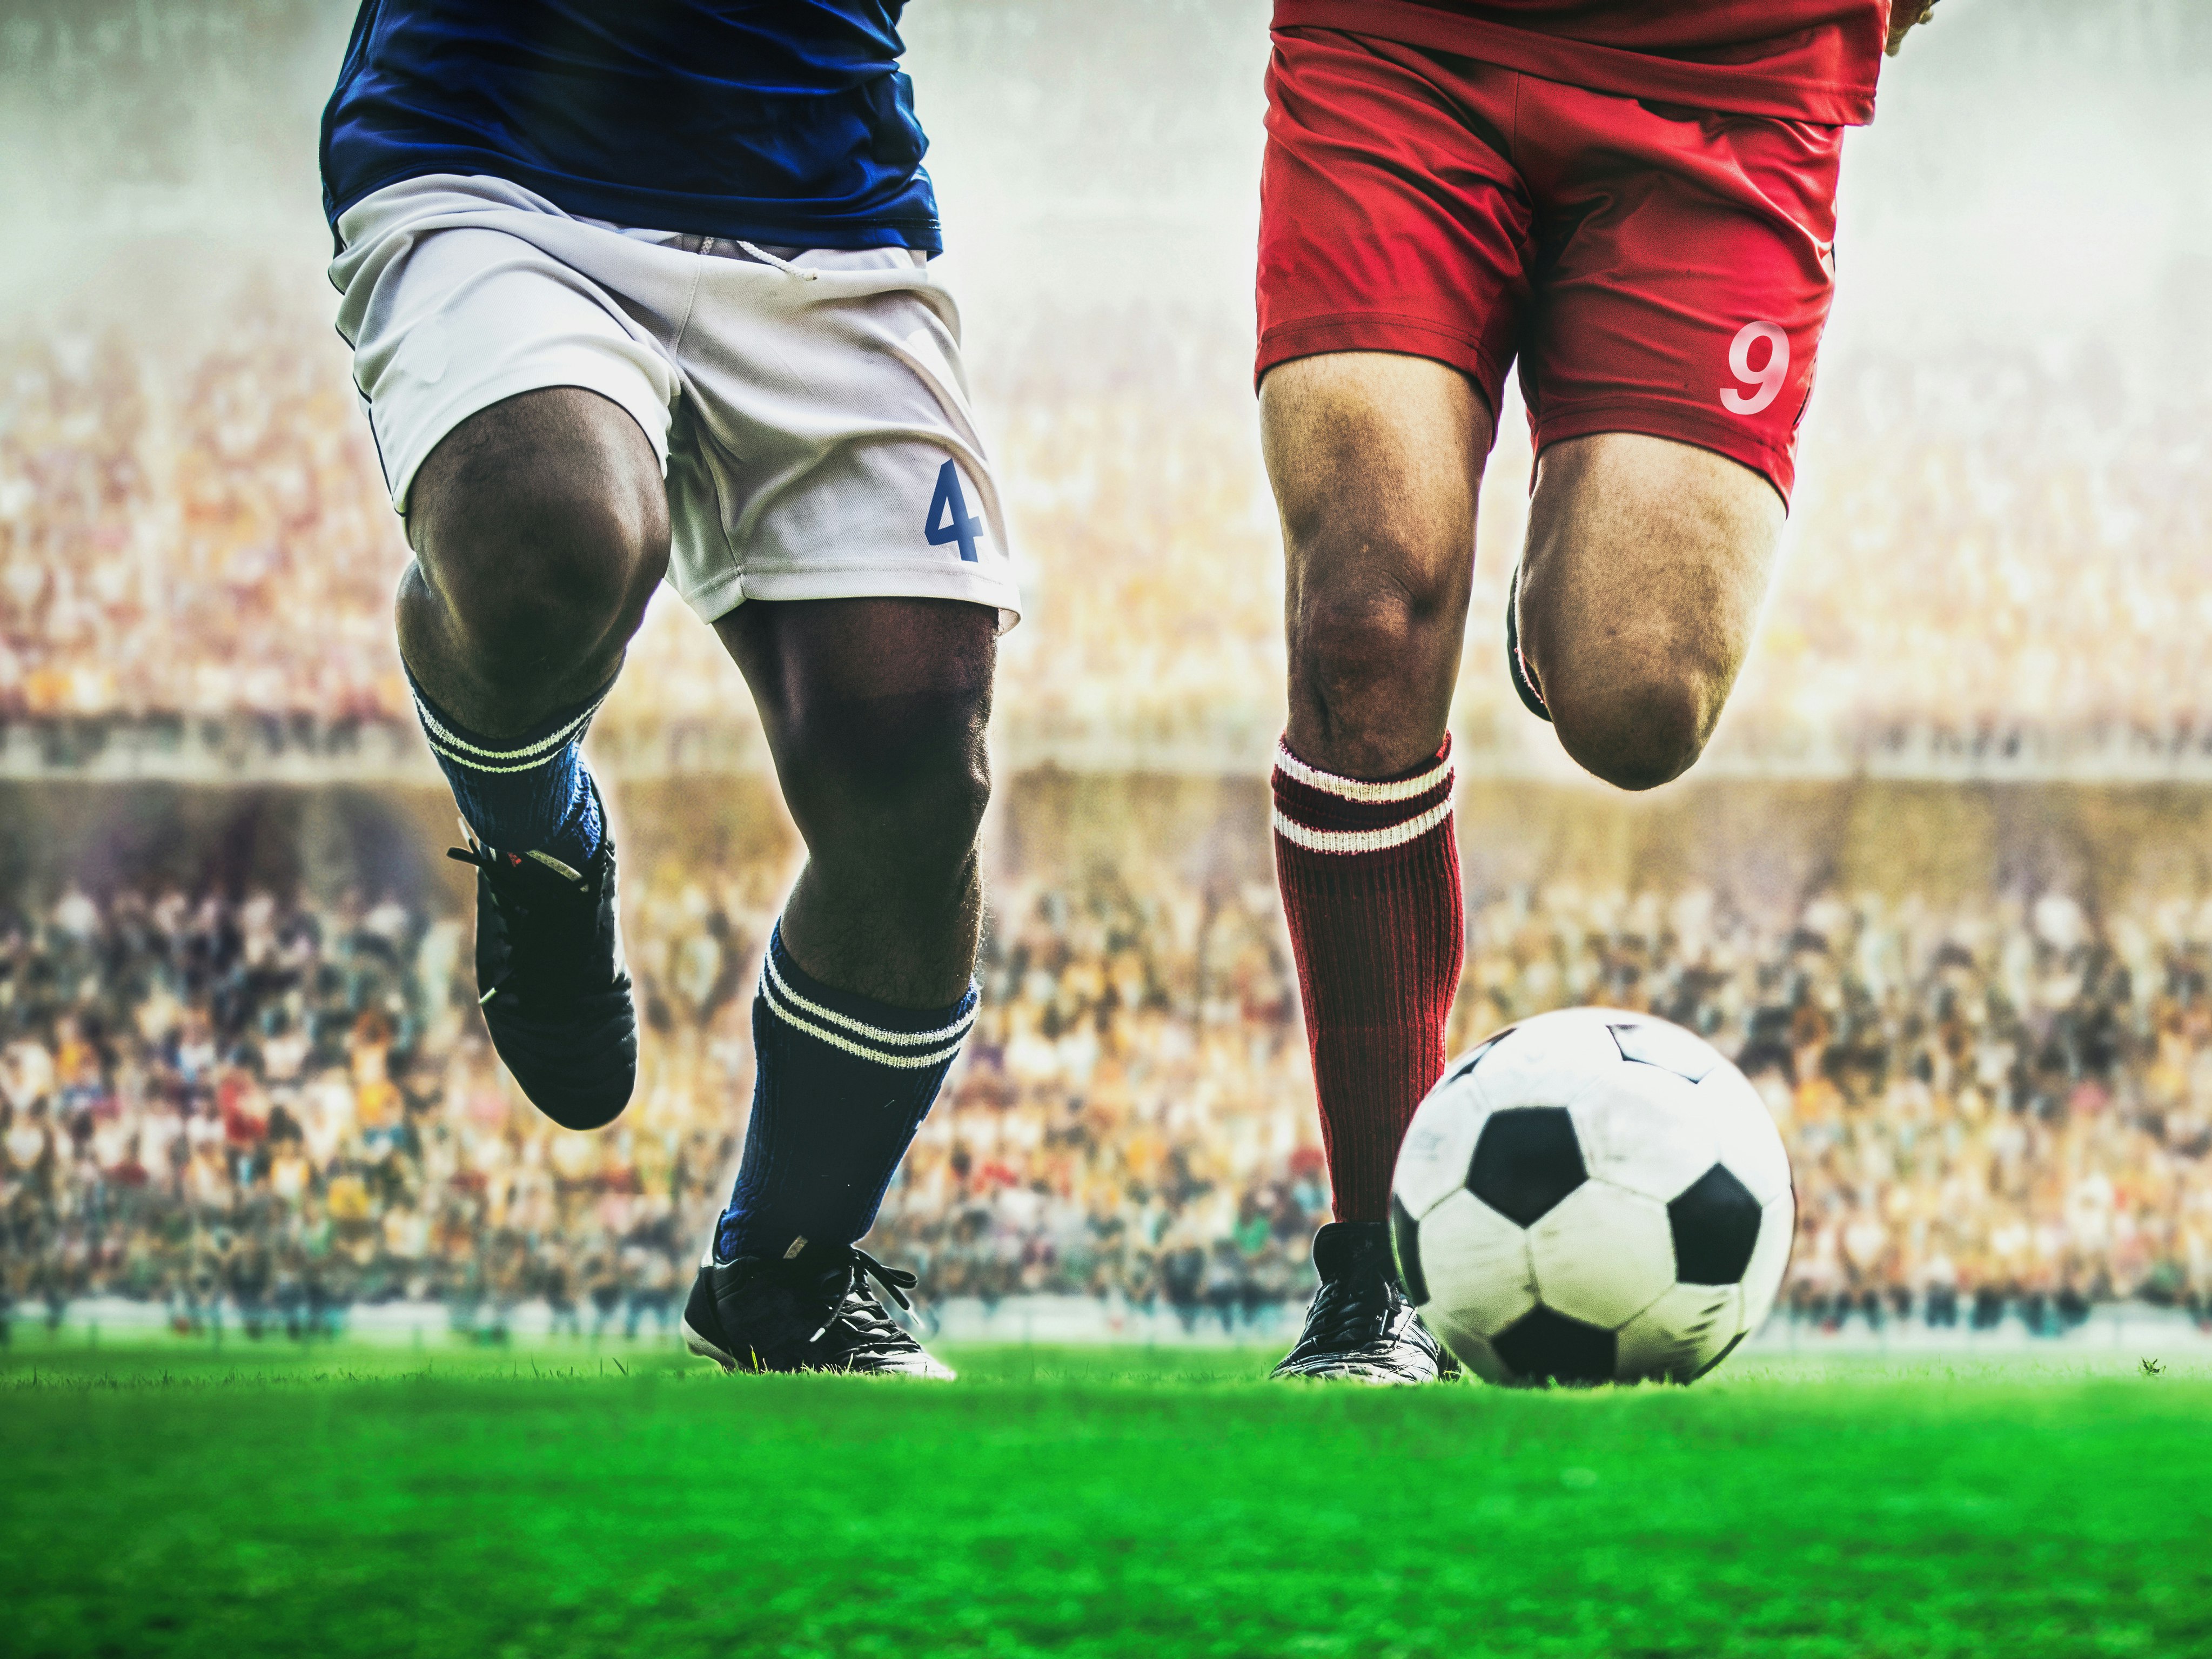 Illustrasjonsfoto av beina til to fotballspillere som jager en fotball på gressbane: den ene har blå og hvit drakt, den andre har rød